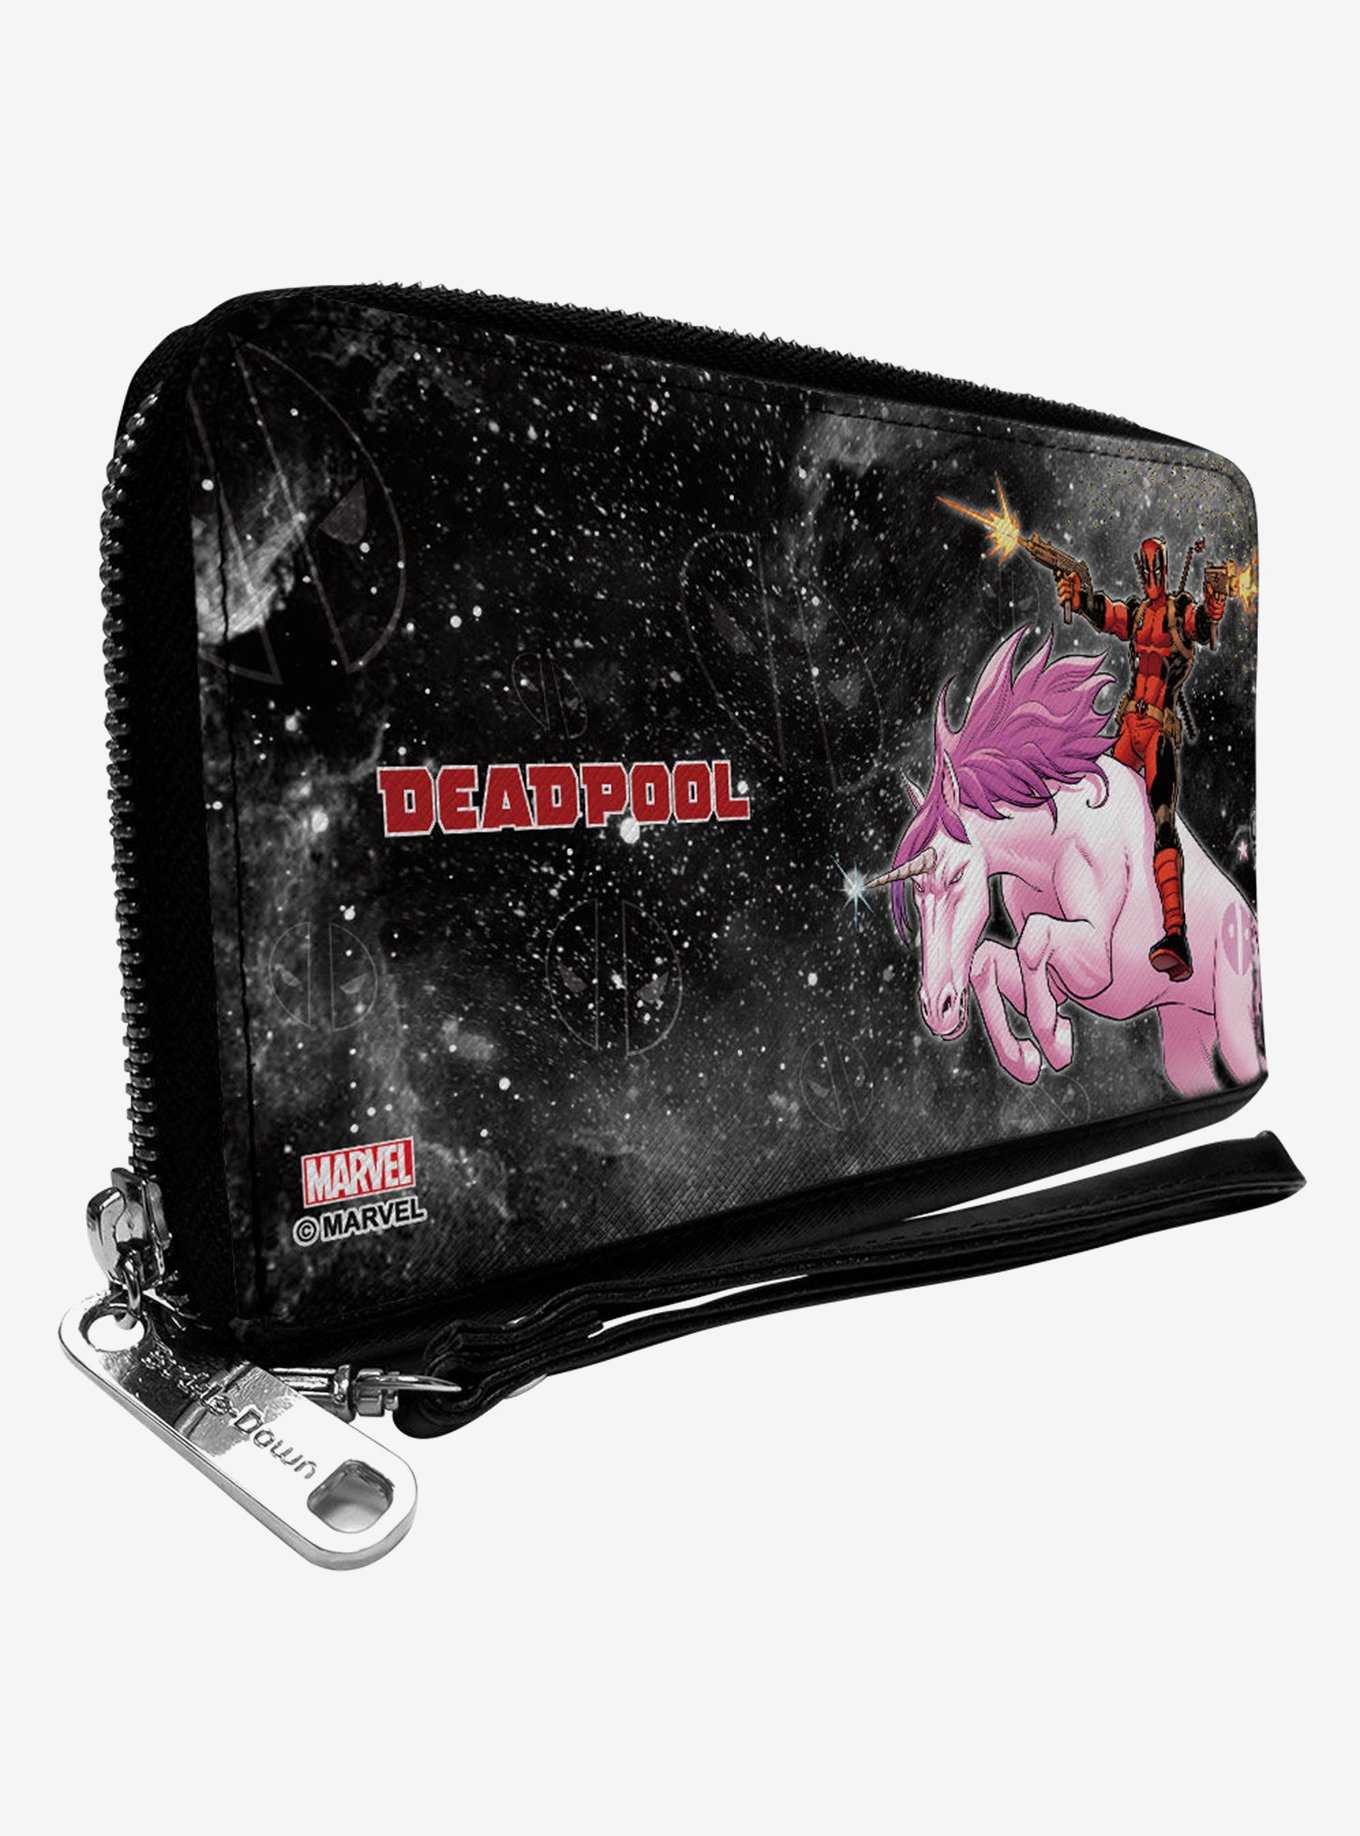 Marvel Deadpool Kills Deadpool Again Unicorn Issue 2 Zip Around Wallet, , hi-res